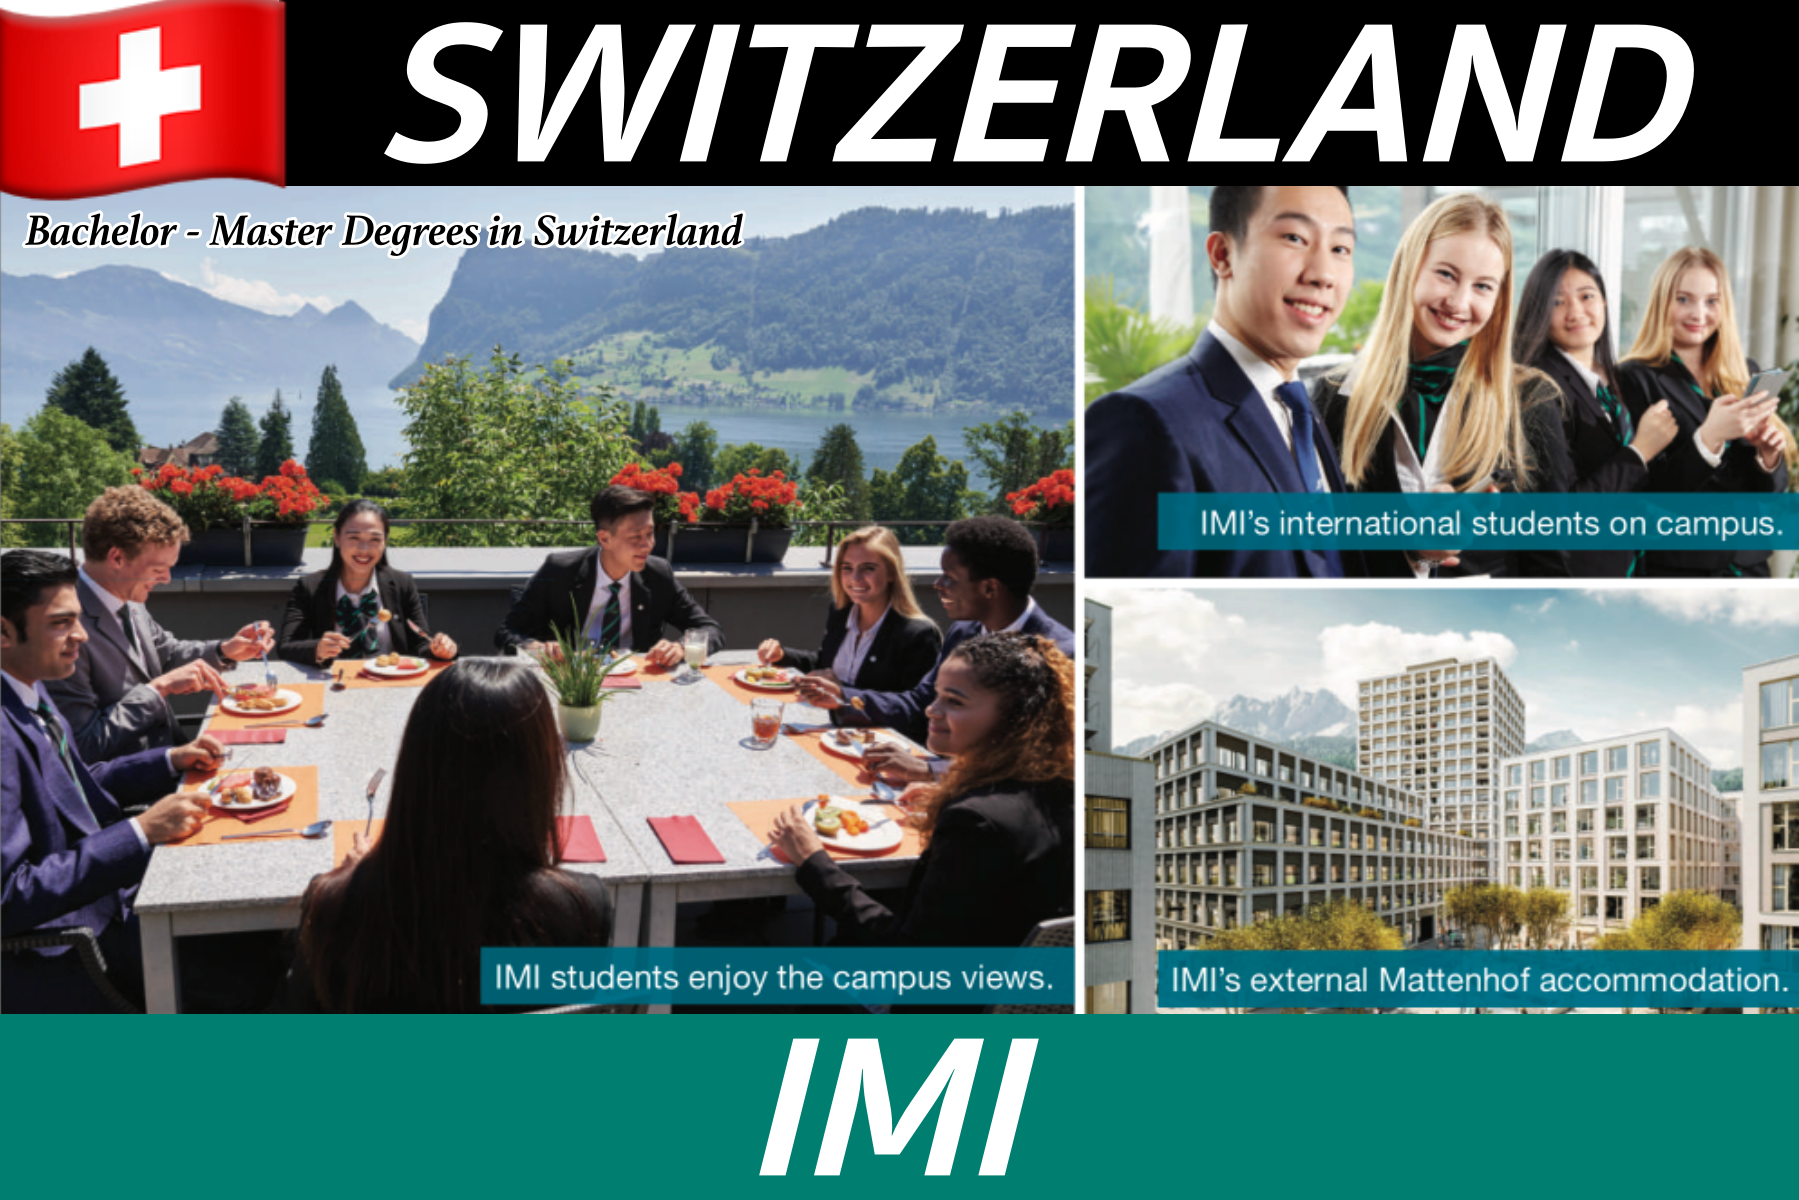 เรียน+ฝึกงานเงินเดือน 85,000! ป.ตรี-ป.โทที่ IMI, SWITZERLAND ทุนการศึกษาสูงสุด 650,000!